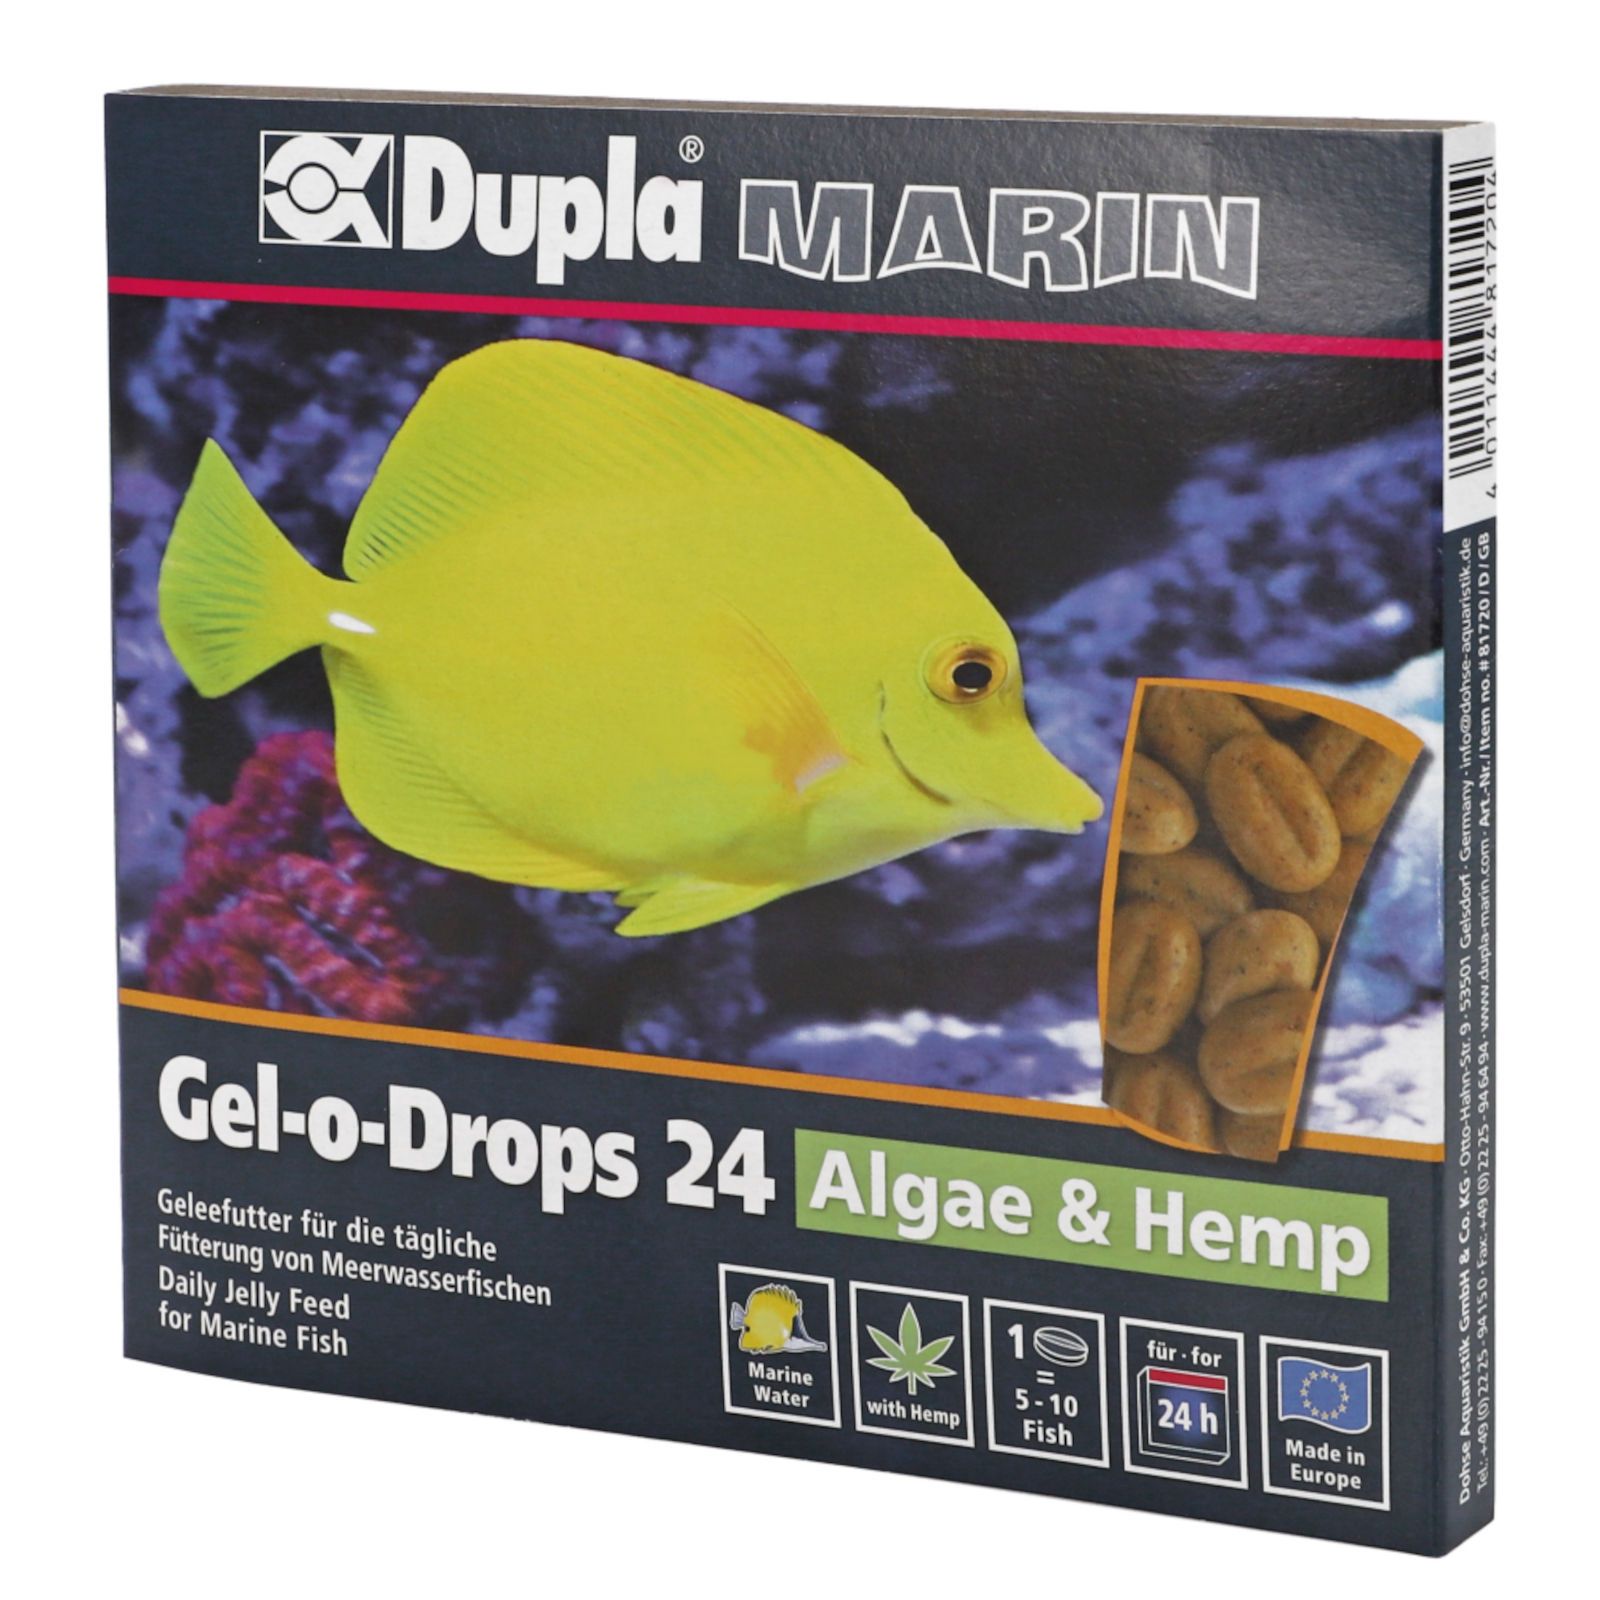 Dupla Marin Zierfischfutter Gel-o-Drops 24 Algae & Hemp